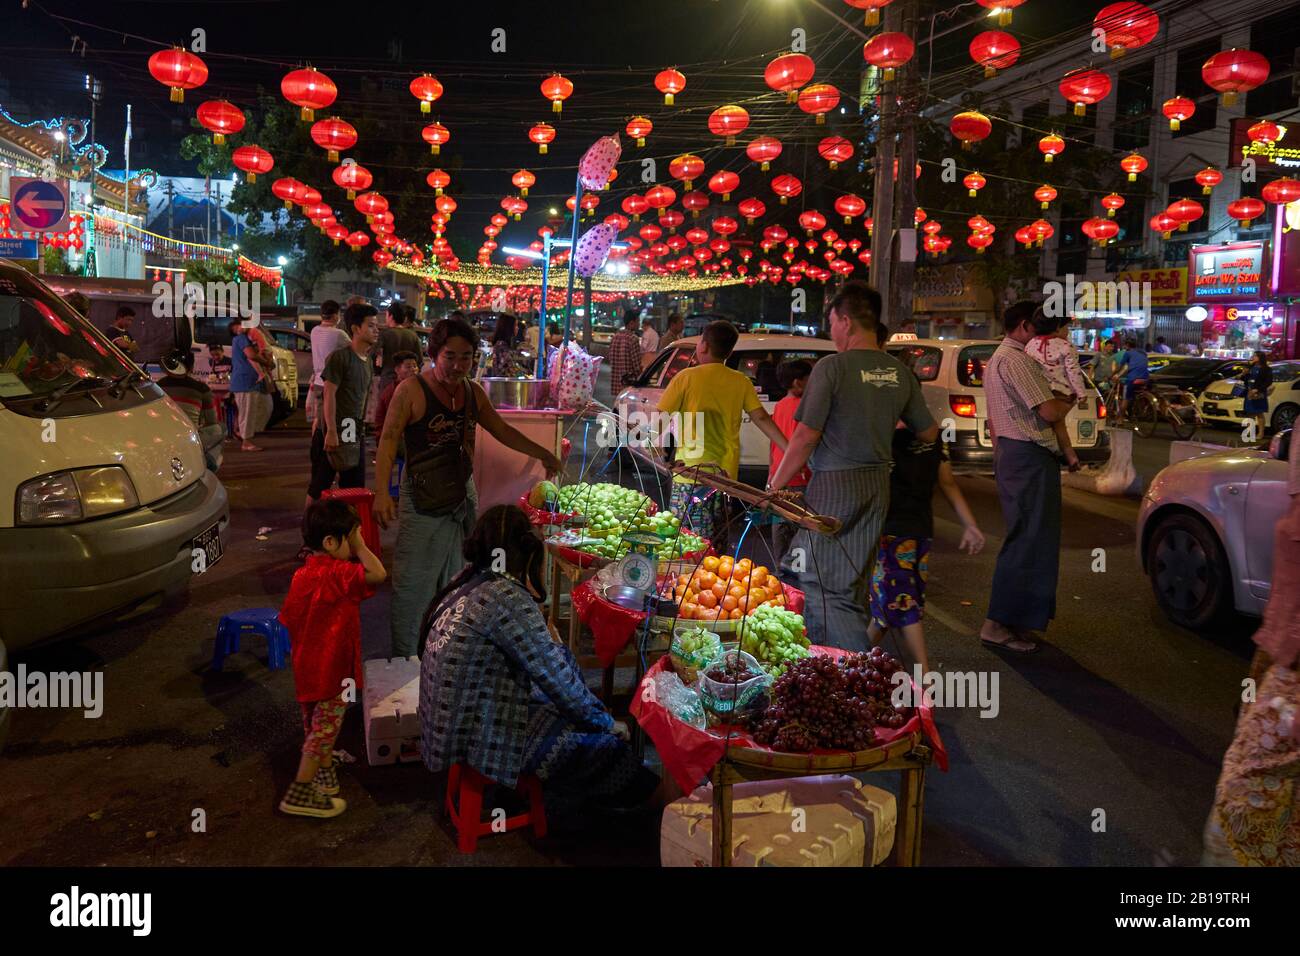 Für das chinesische Neujahrsfest mit roten Lampions geschmückte Straße, Obststand, Passanten, chinesisches Viertel, Yangon, Myanmar Stock Photo